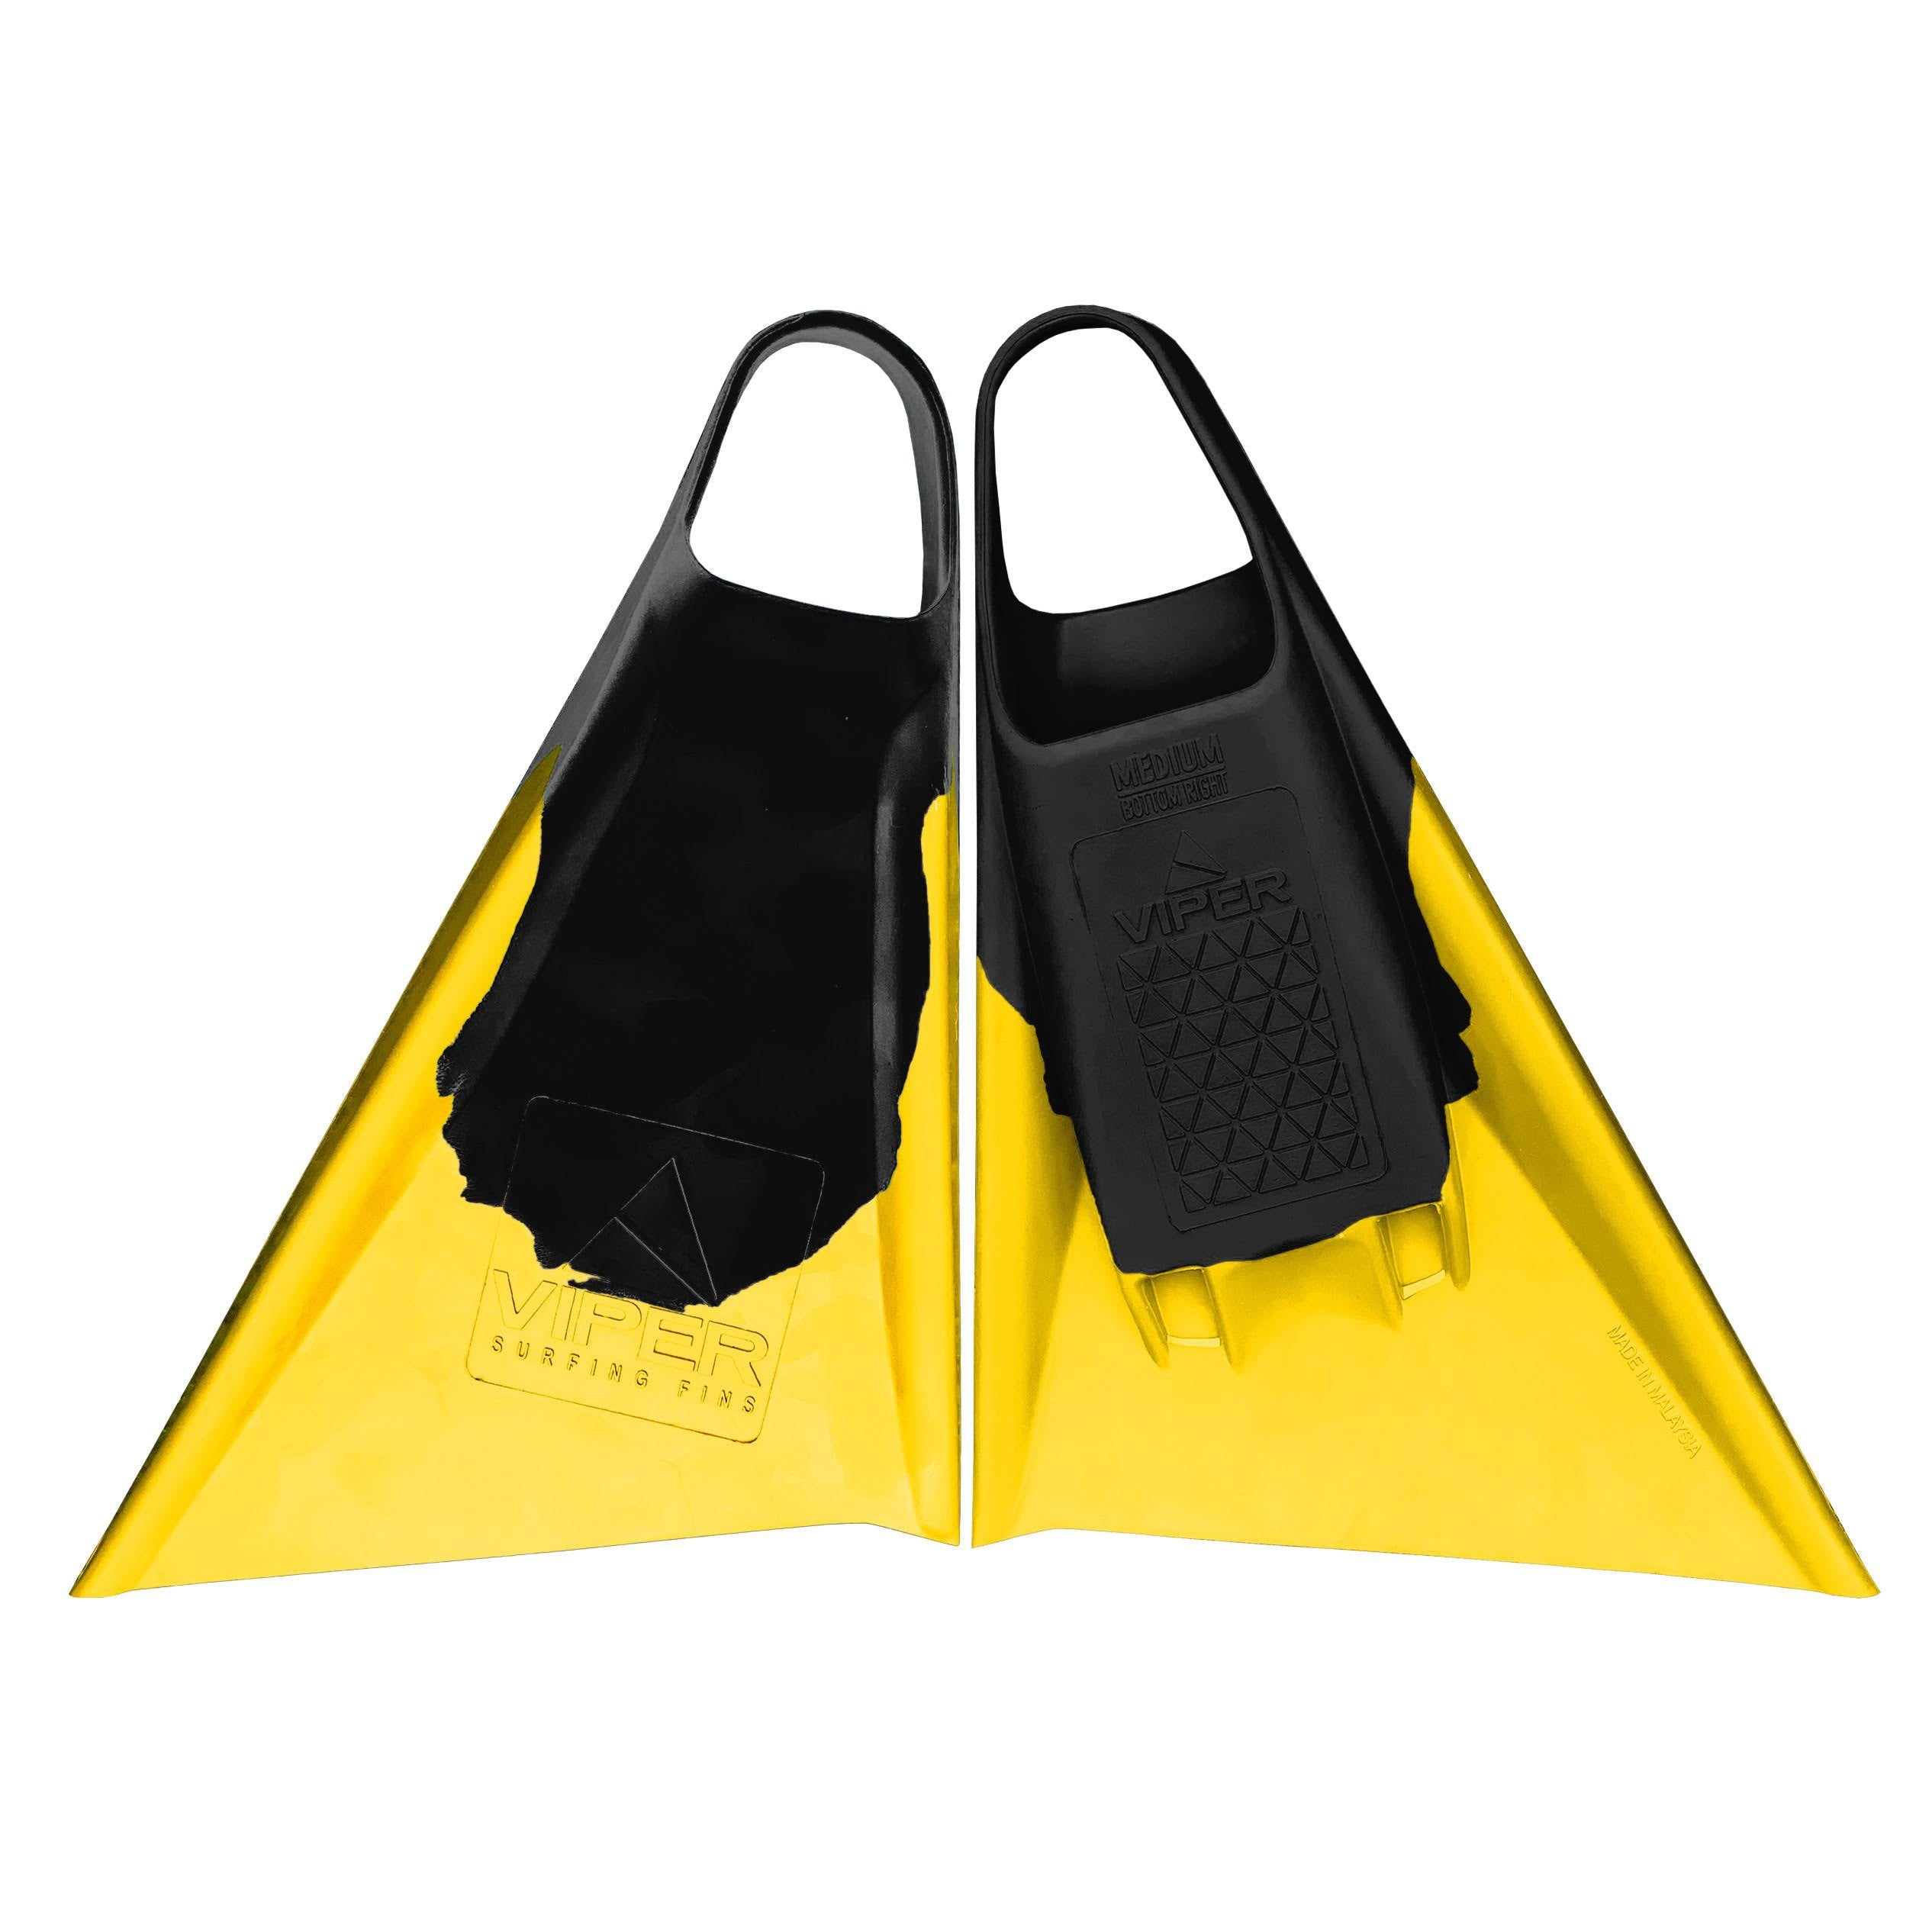 MS VIPER Delta Icons - Bodyboard Fins - Black / Yellow